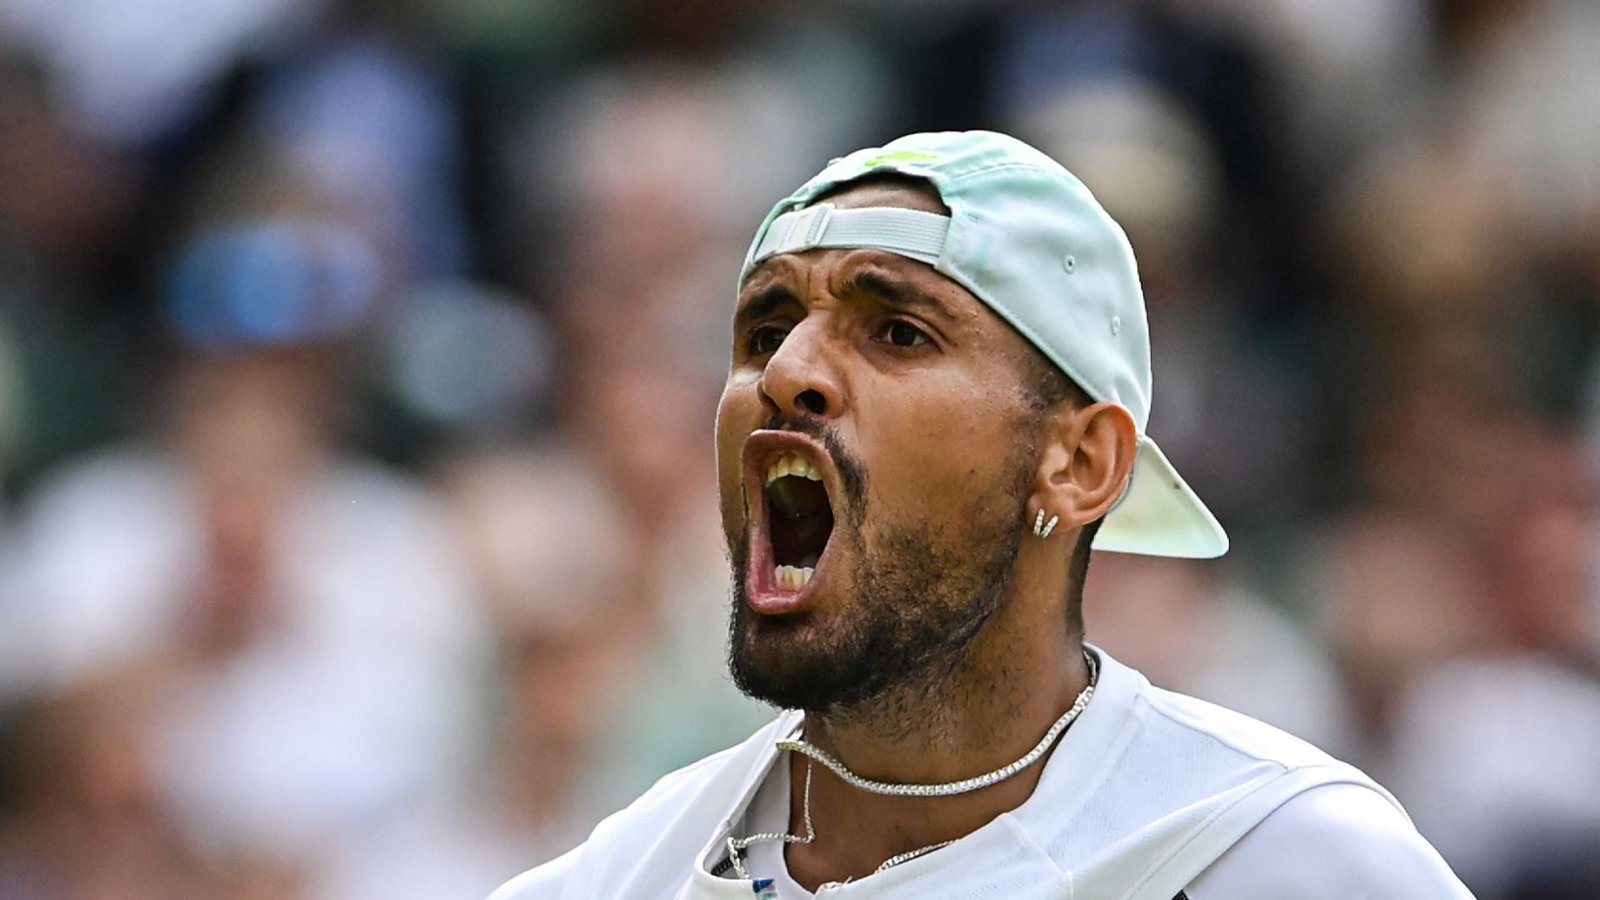 Nick Kyrgios steht im Viertelfinale von Wimbledon.Foto: AFP/GLYN KIRK